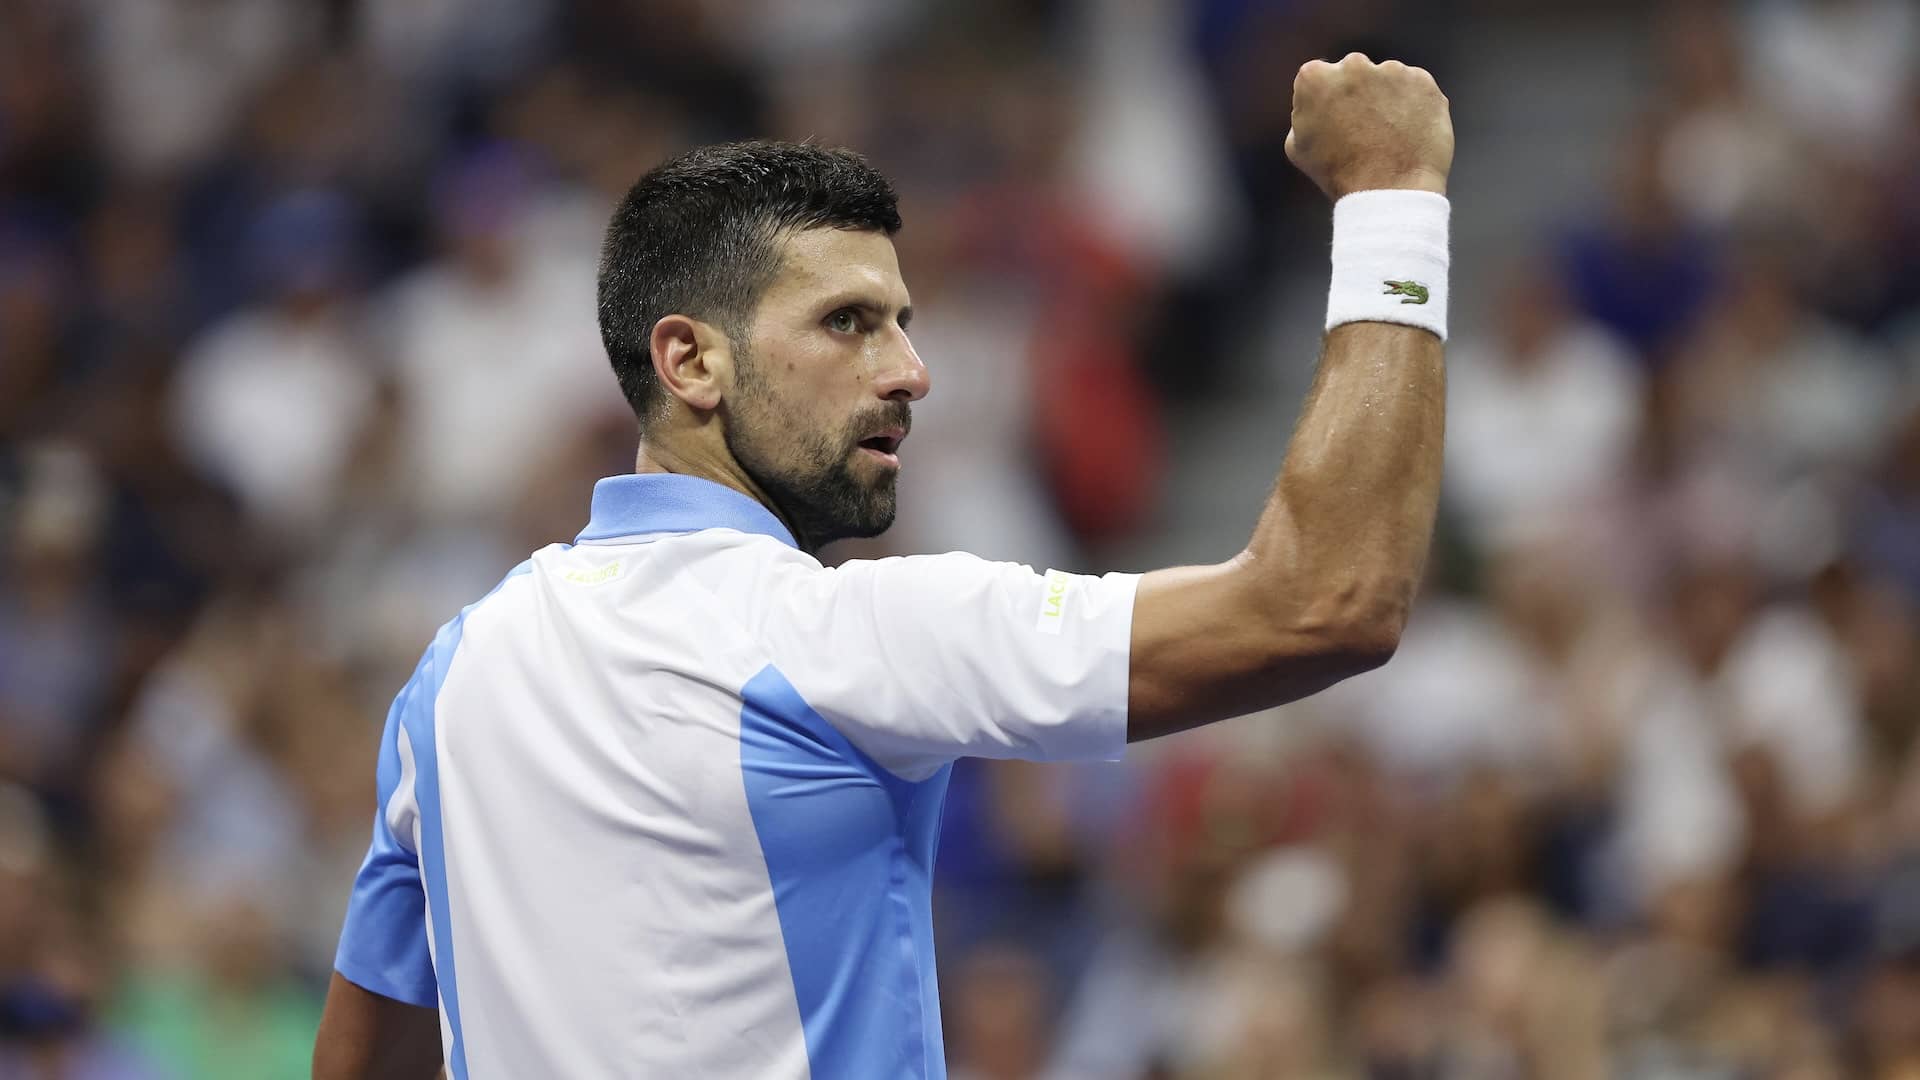 Novak Djokovic busca ganar su cuarto título en el US Open.